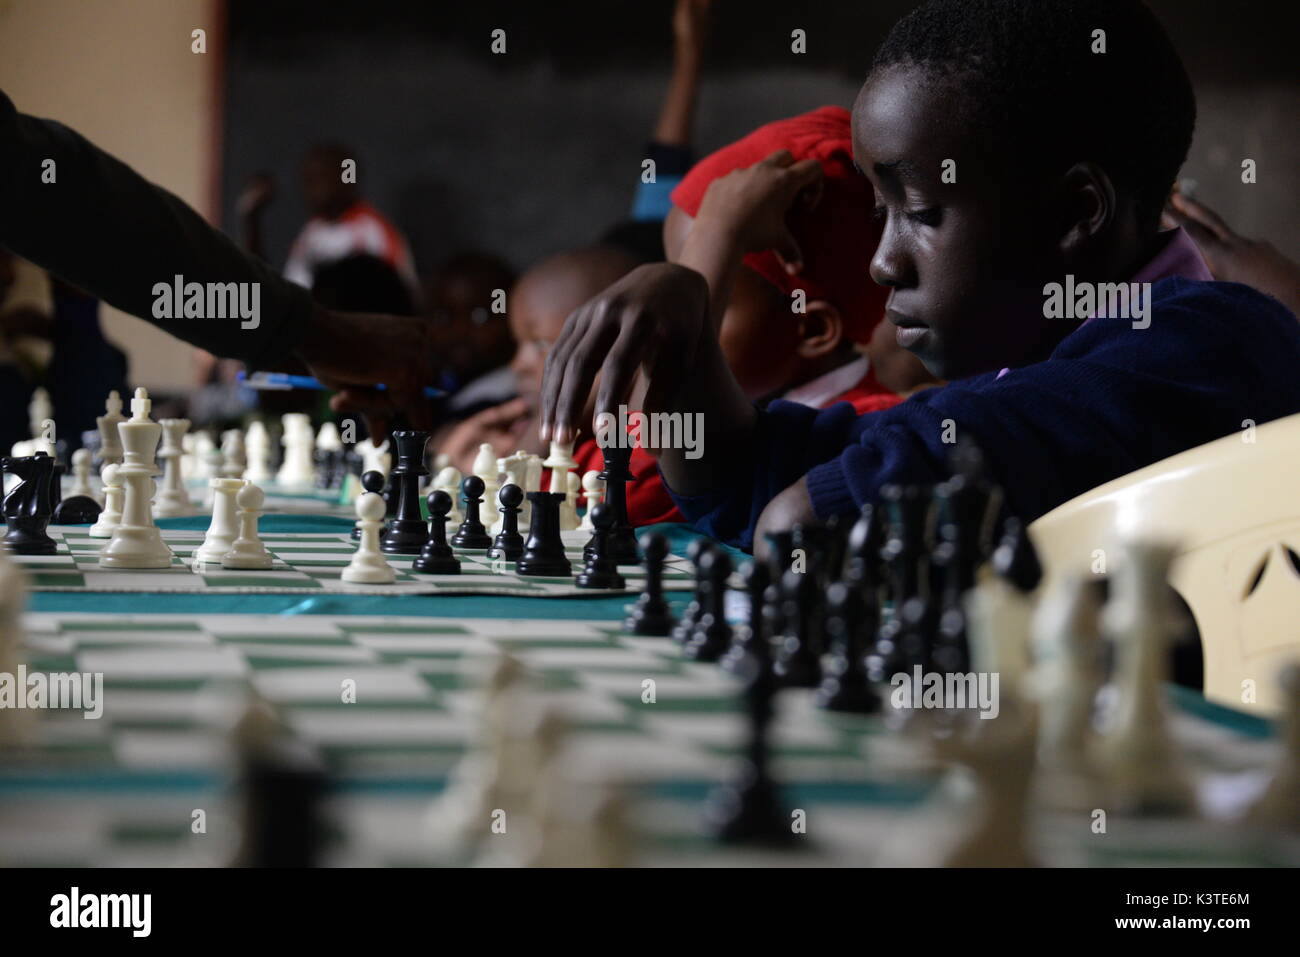 Un giovane keniota giocando a scacchi durante un torneo in Mukuru Kwa Njenga, una delle baraccopoli di Nairobi (Kenya), 15 luglio 2017. Adolescente gli ugandesi sono anche particpating in questo torneo. Per un lungo periodo di tempo in Uganda, scacchi è stato riservato per l'elite istruita soltanto. Con l aiuto di Robert Katendes una ragazza di nome Phiona Mutesi è diventata una stella di scacchi. Lei ora si ispira tutta una generazione di bambini in Uganda. Foto: Gioia Forster/dpa Foto Stock